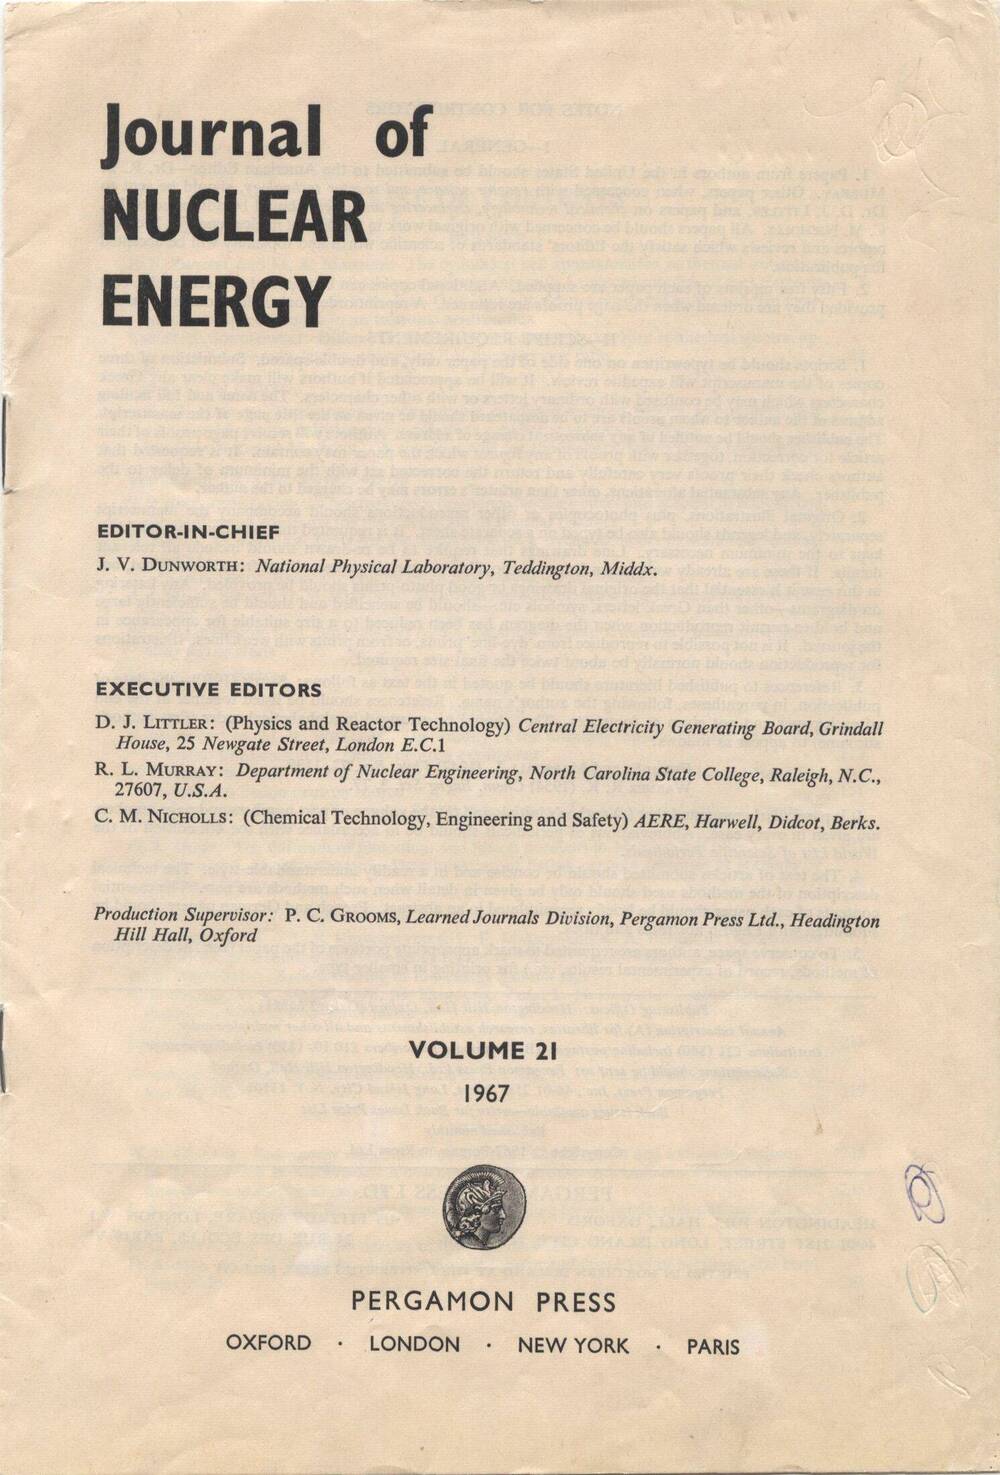 Статья научная (на английском языке). JournaI of NUCLEAR ENERGY. С участием Ф.Х. Насырова.